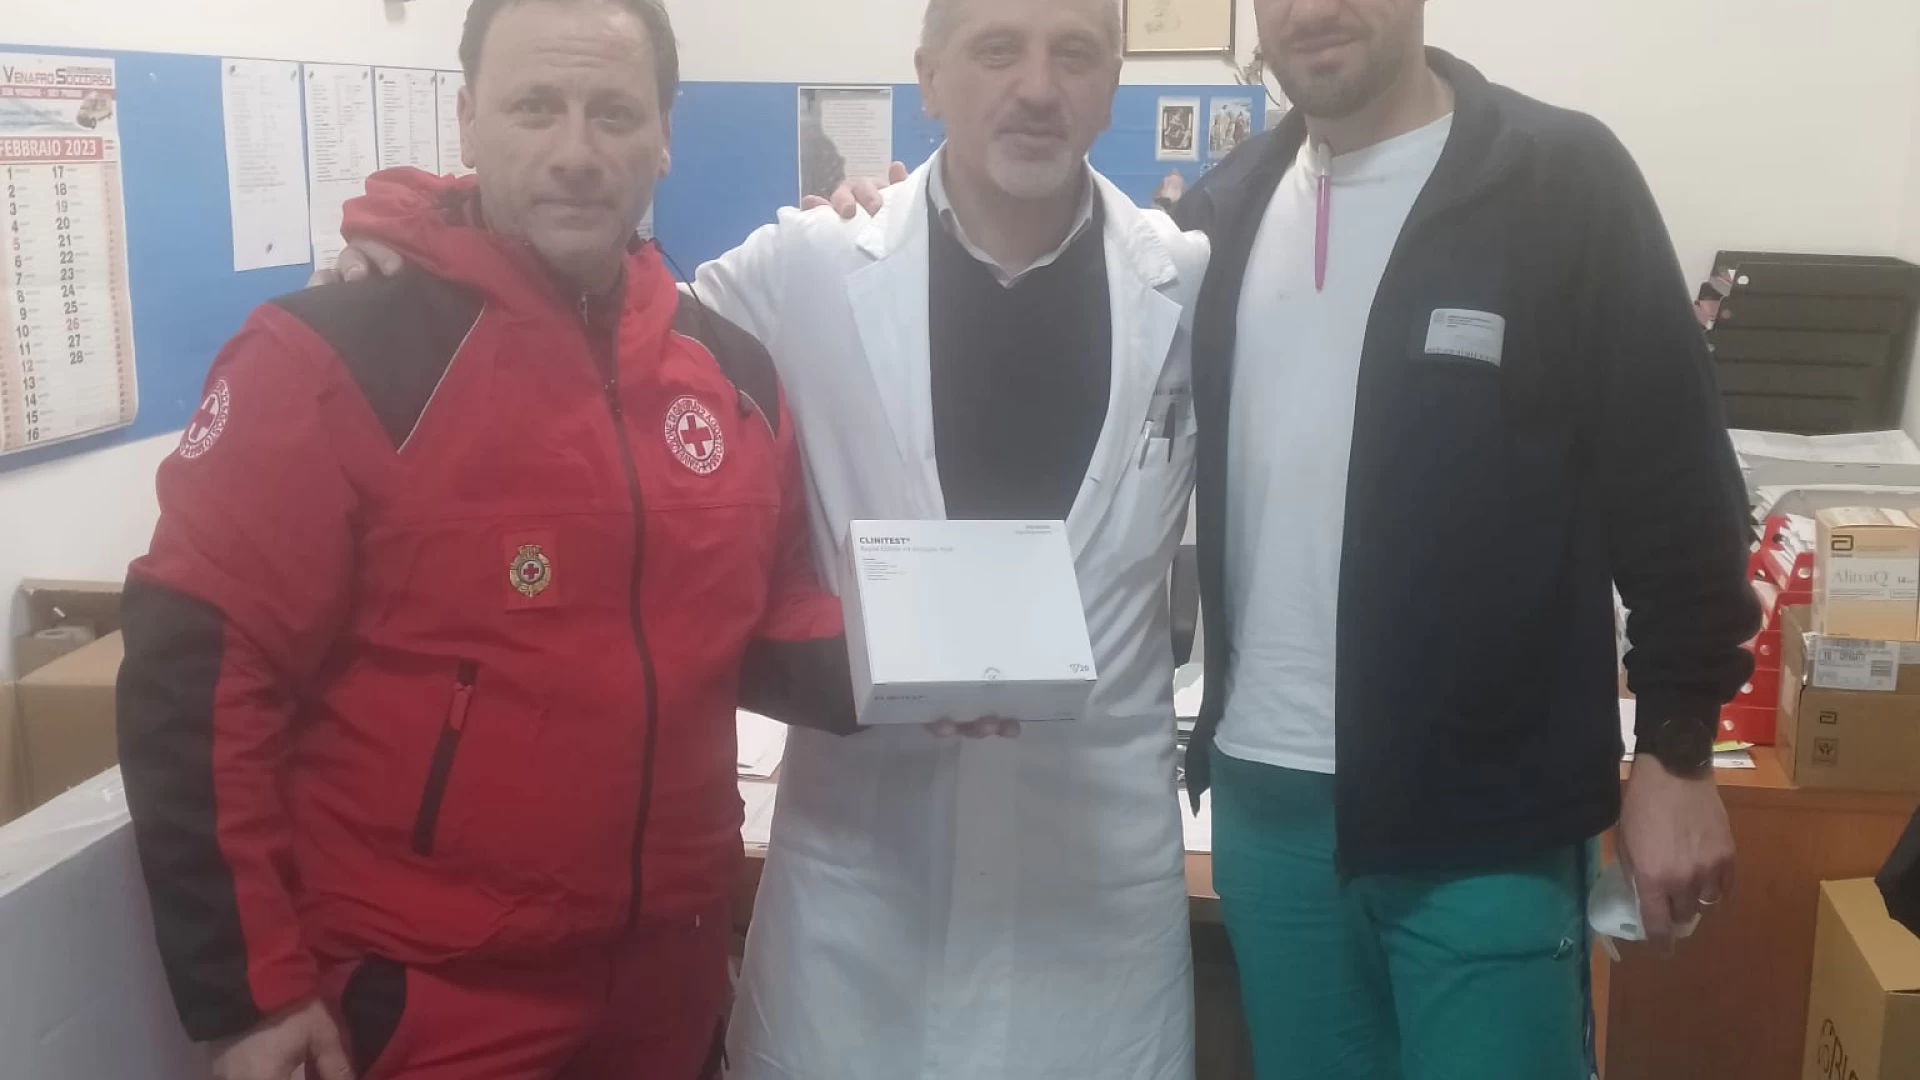 Il Comitato CRI Isernia dona 400 tamponi antigenici Covid-19 al pronto soccorso dell’Ospedale “F. Veneziale”